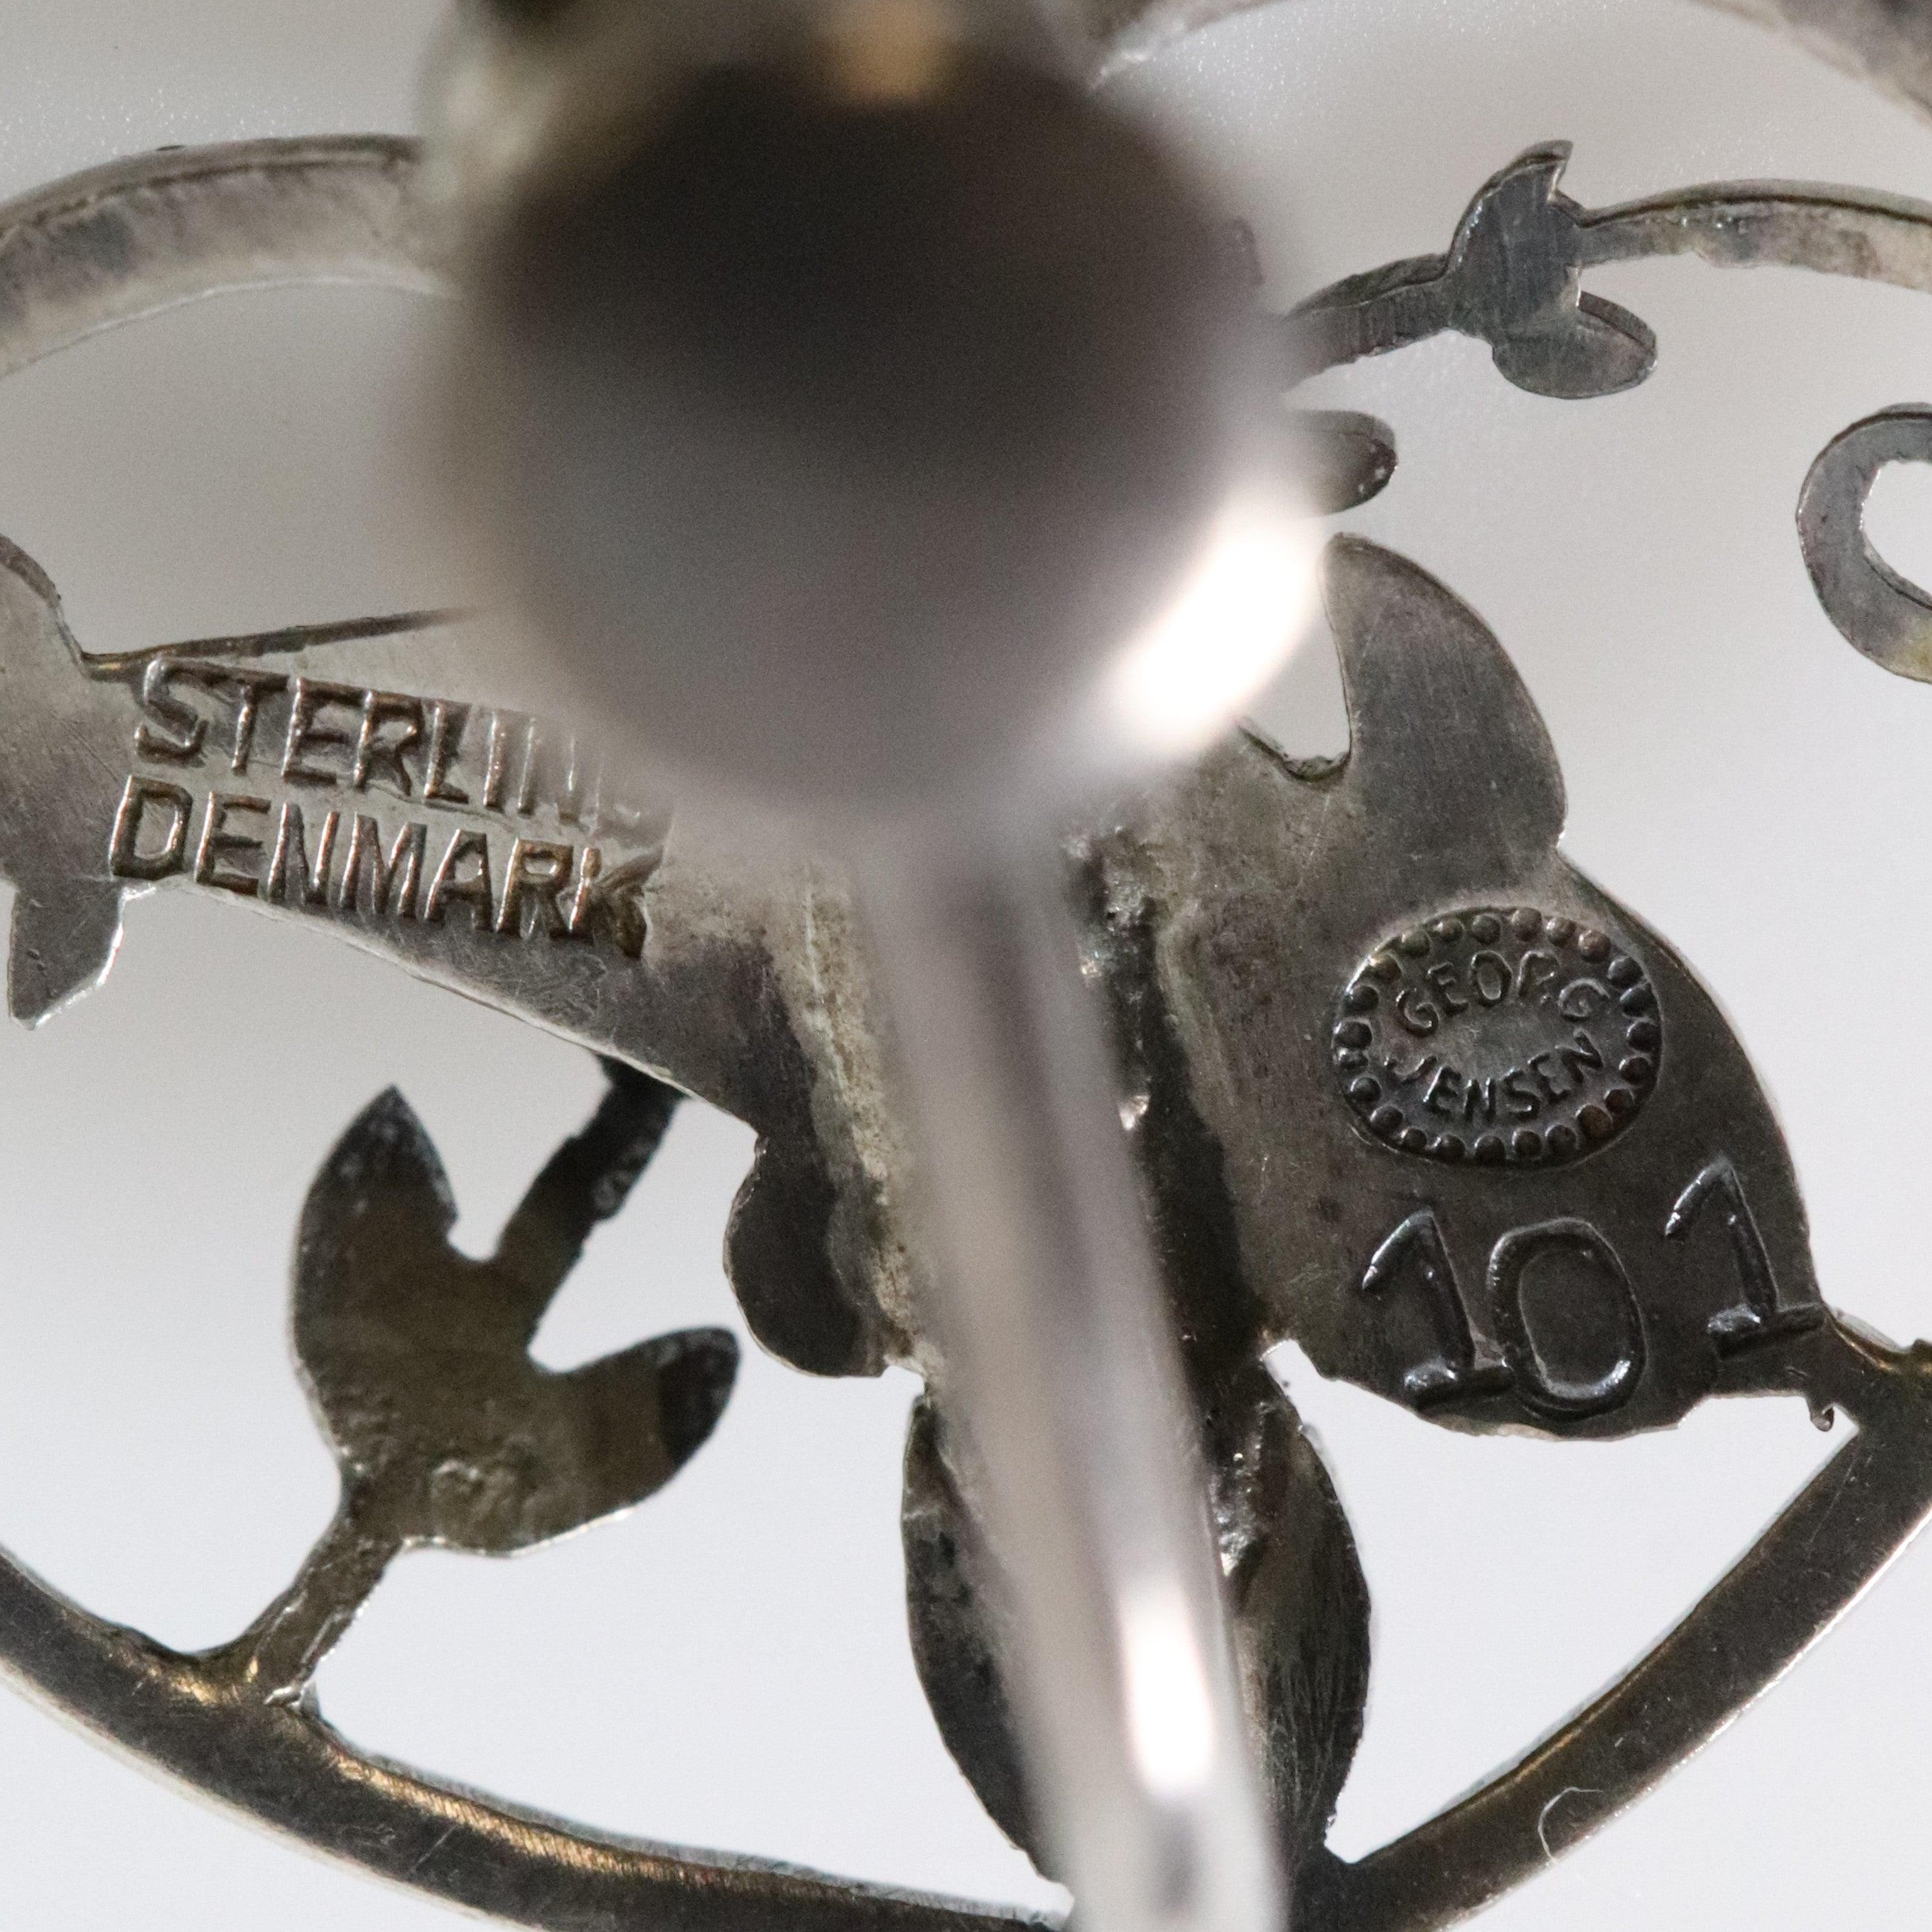 Vintage Georg Jensen Earrings # 101, Sterling Silver. Screw Back. Designed  by Arno Malinowski —